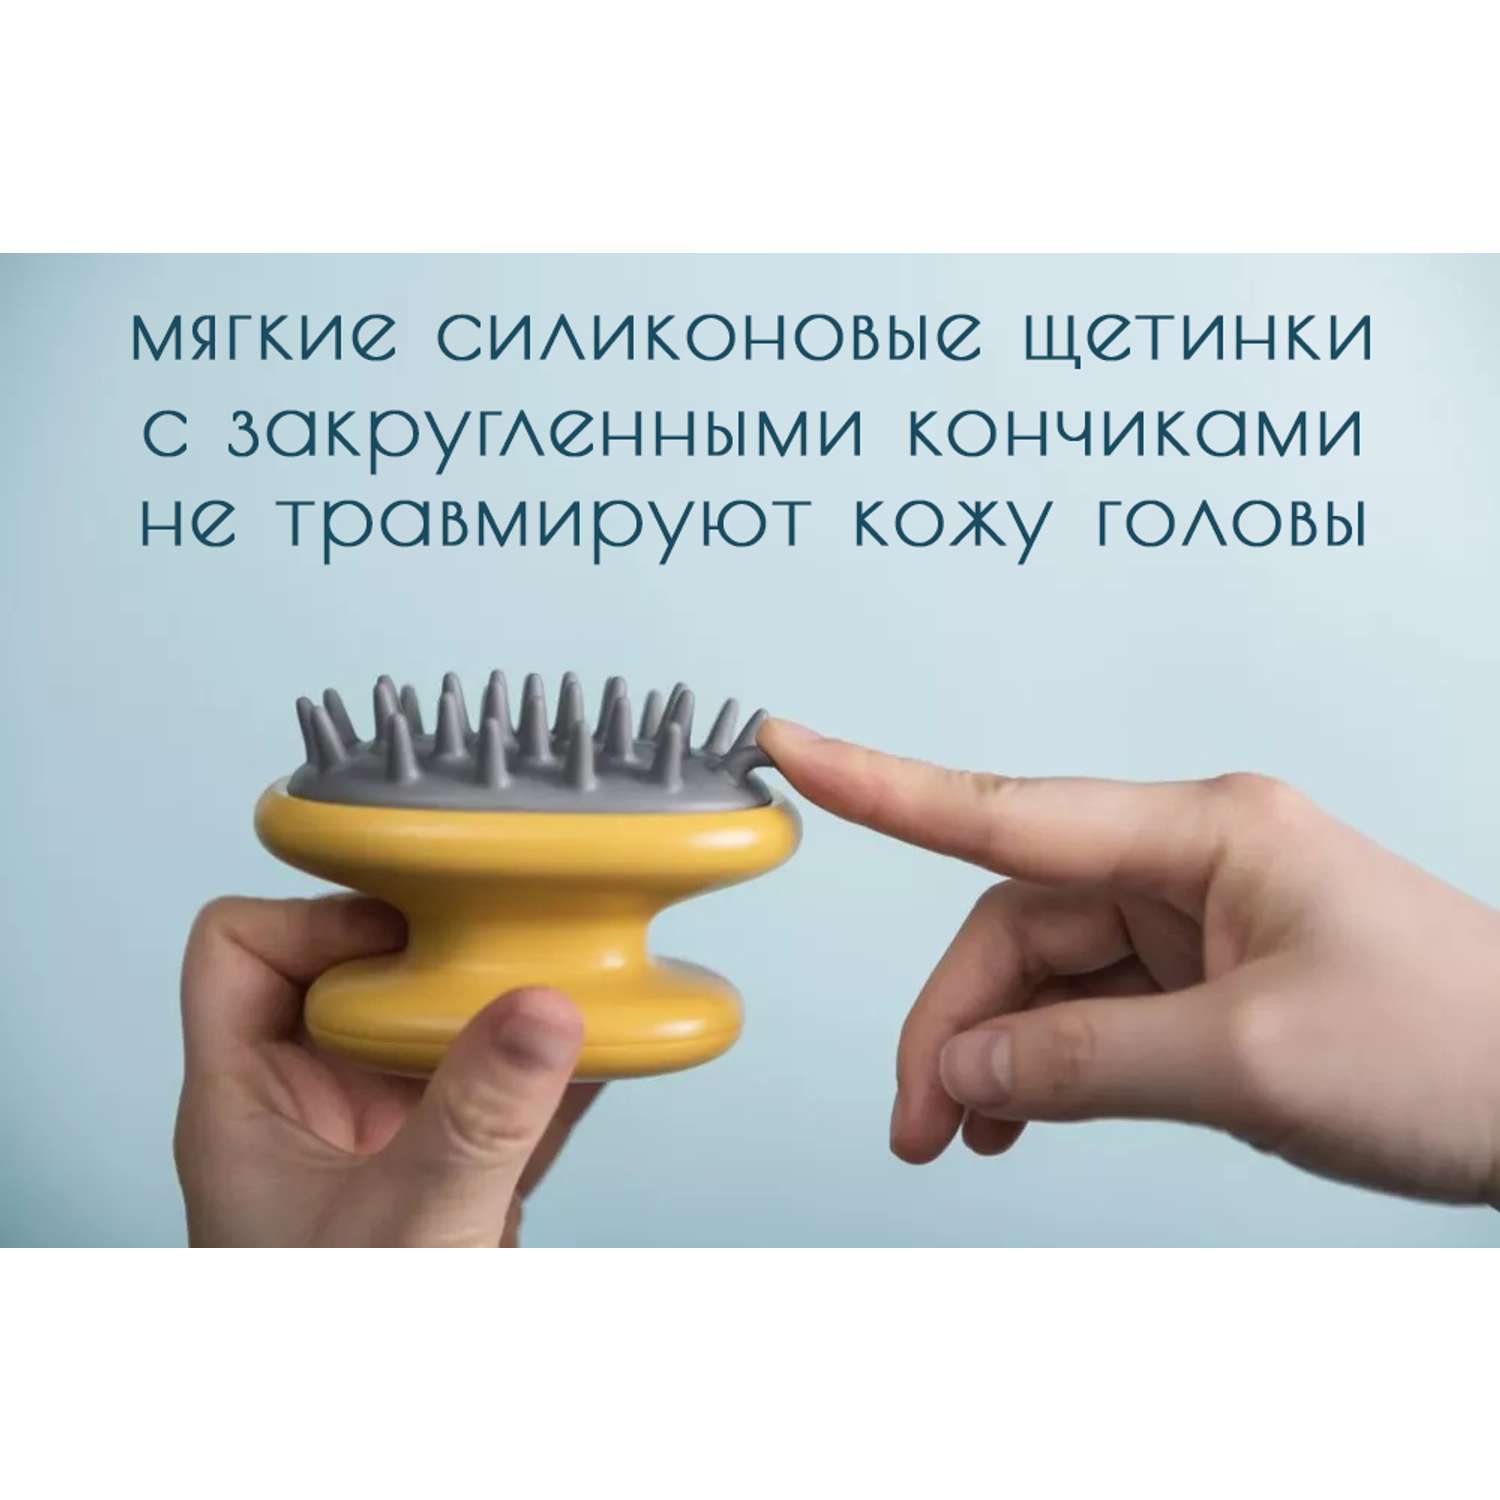 Щетка для волос массажная Scandylab желто-серая - фото 2